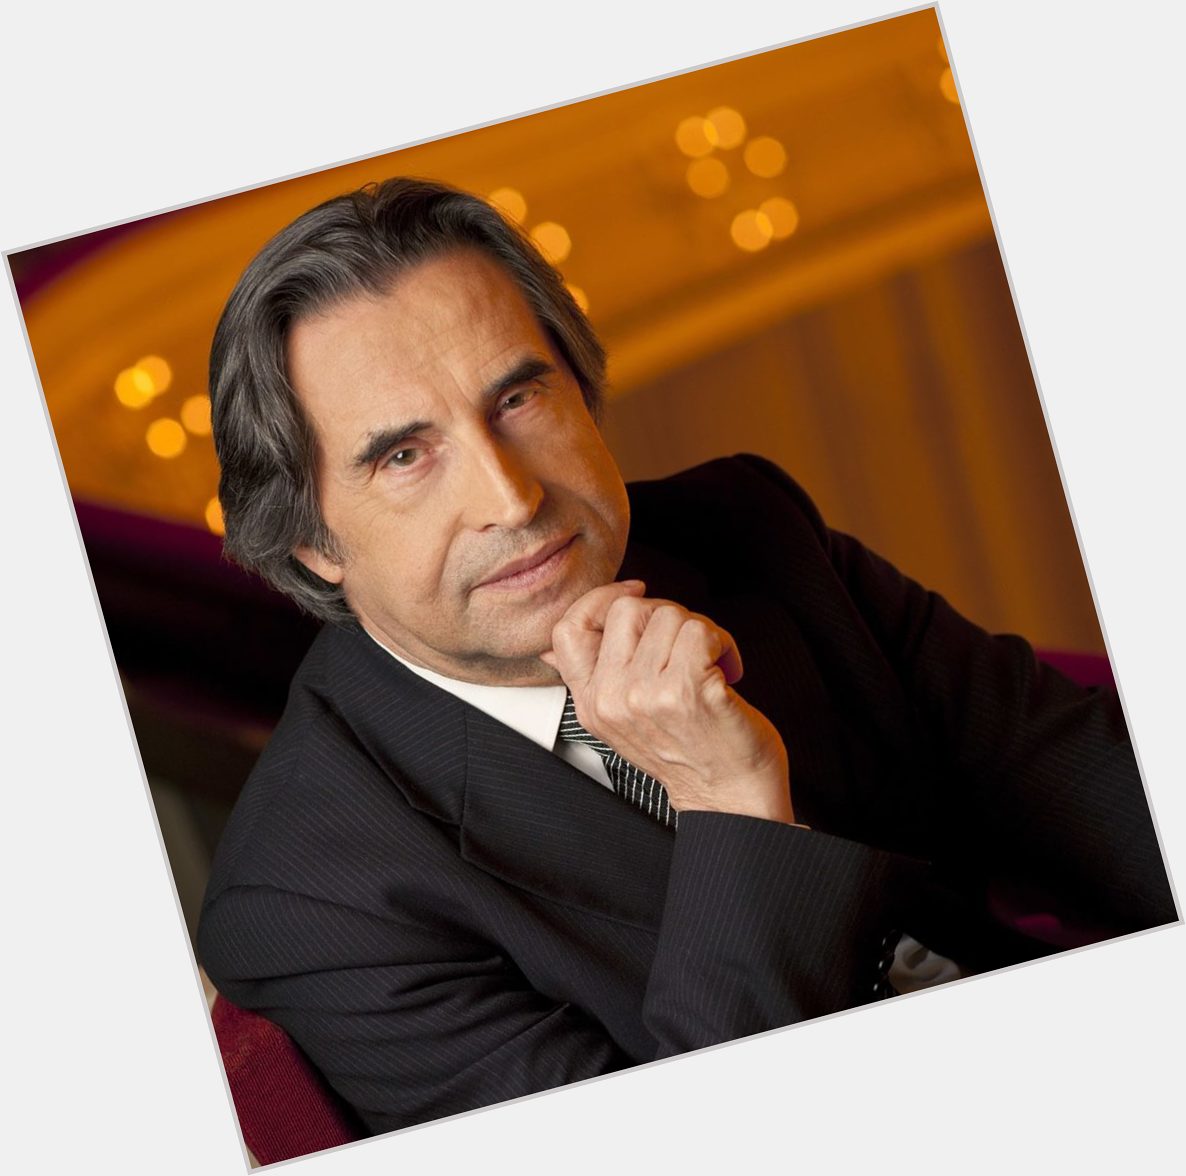 Auguri maestro Riccardo Muti, felice compleanno

Happy birthday maestro Riccardo Muti 